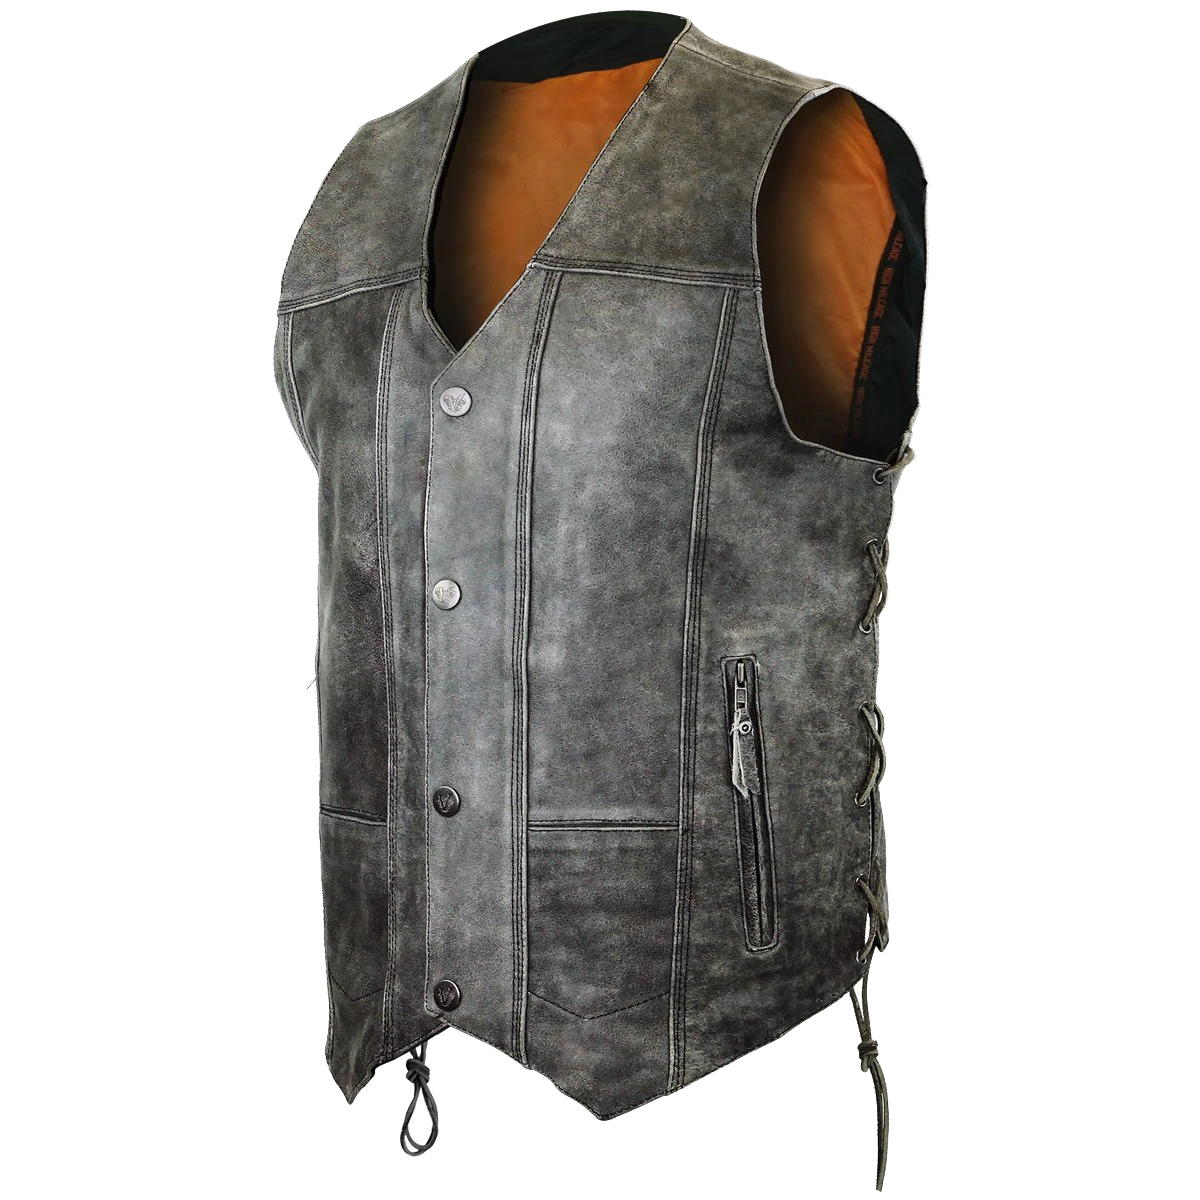 HMM915DG Men's Distressed Gray 10 Pocket Vest